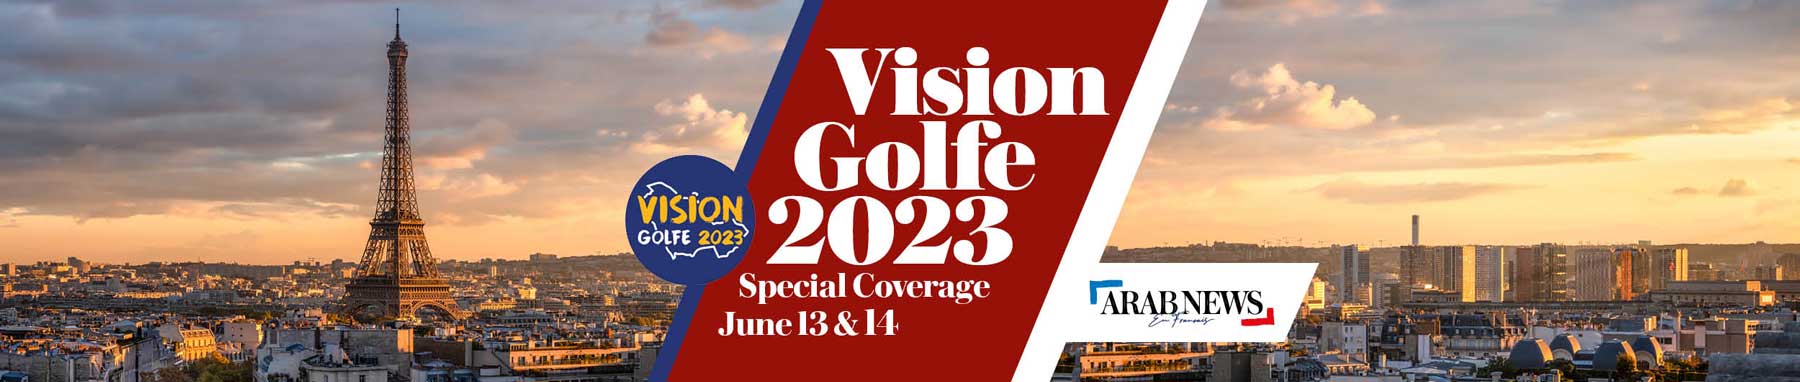 Vision Golfe